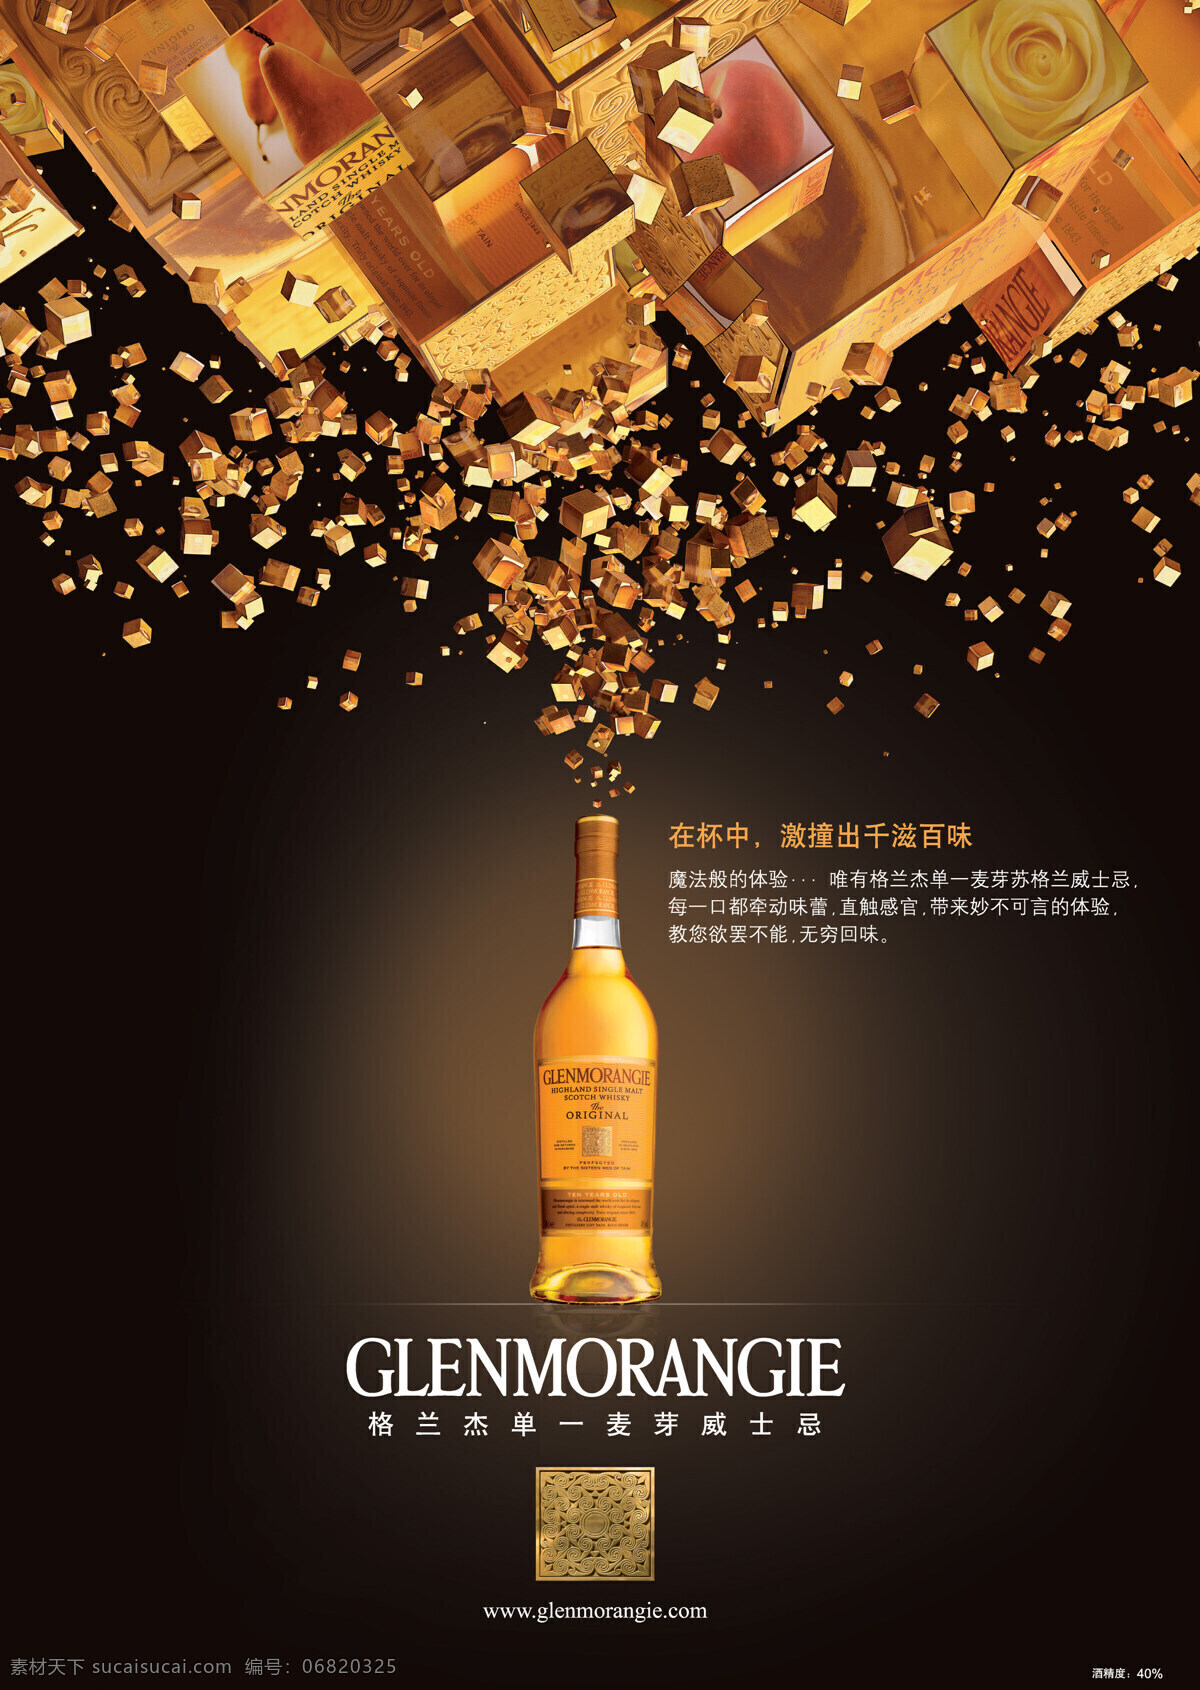 格兰杰酒 格兰杰 glenmorangie 苏格兰 威士忌 单一麦芽 洋酒 璀璨 华丽 醇厚口感 高精度 招贴设计